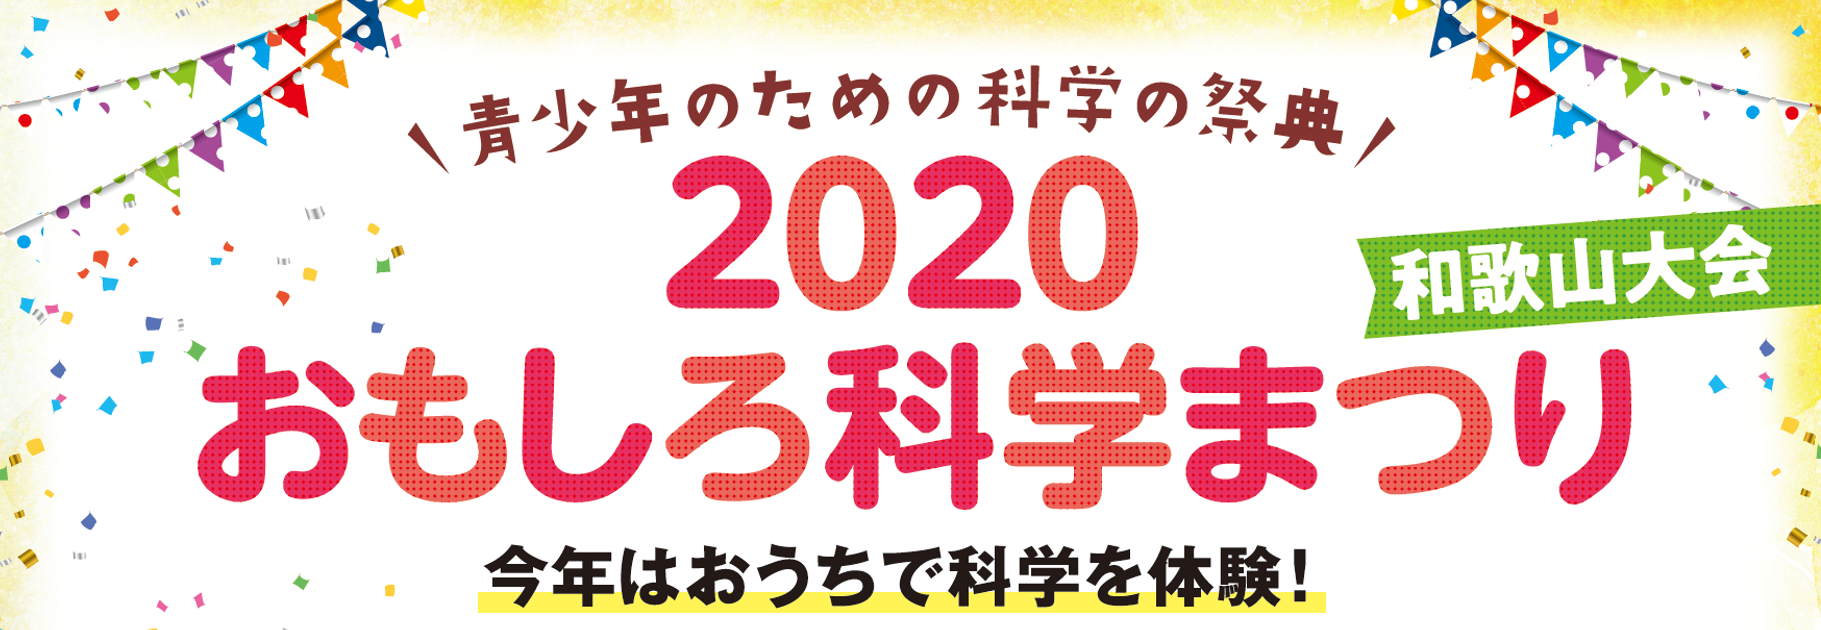 青少年のための科学の祭典 ー 2020 おもしろ科学まつり ー 和歌山大会, オンライン開催